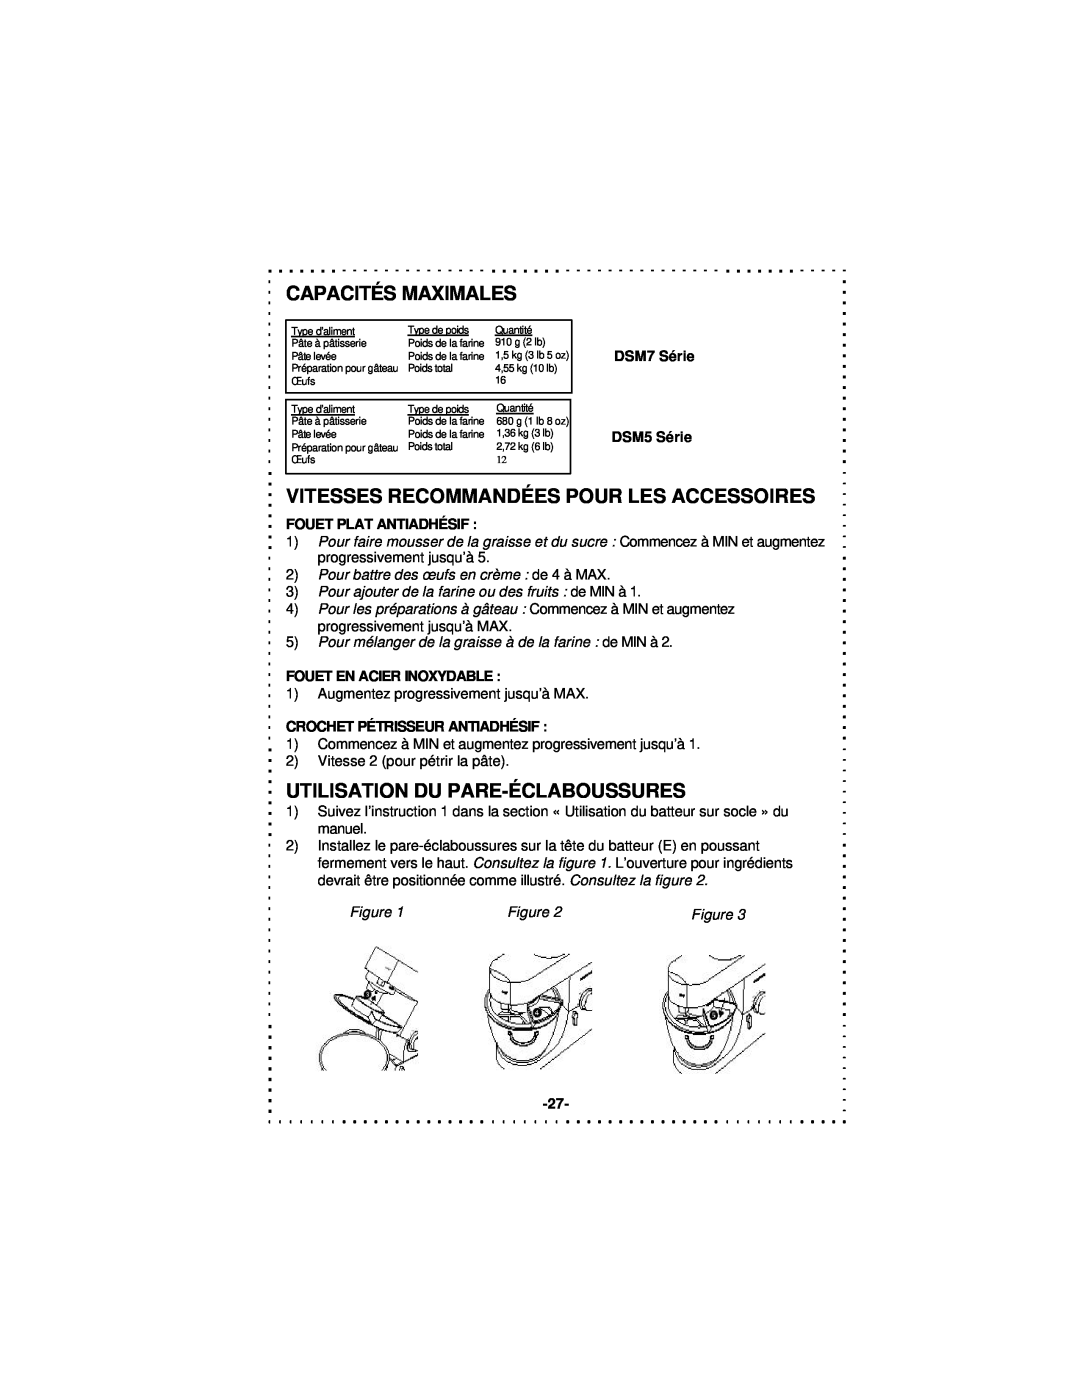 DeLonghi DSM5 - 7 Series instruction manual Capacités Maximales, Vitesses Recommandées Pour Les Accessoires, Figure 